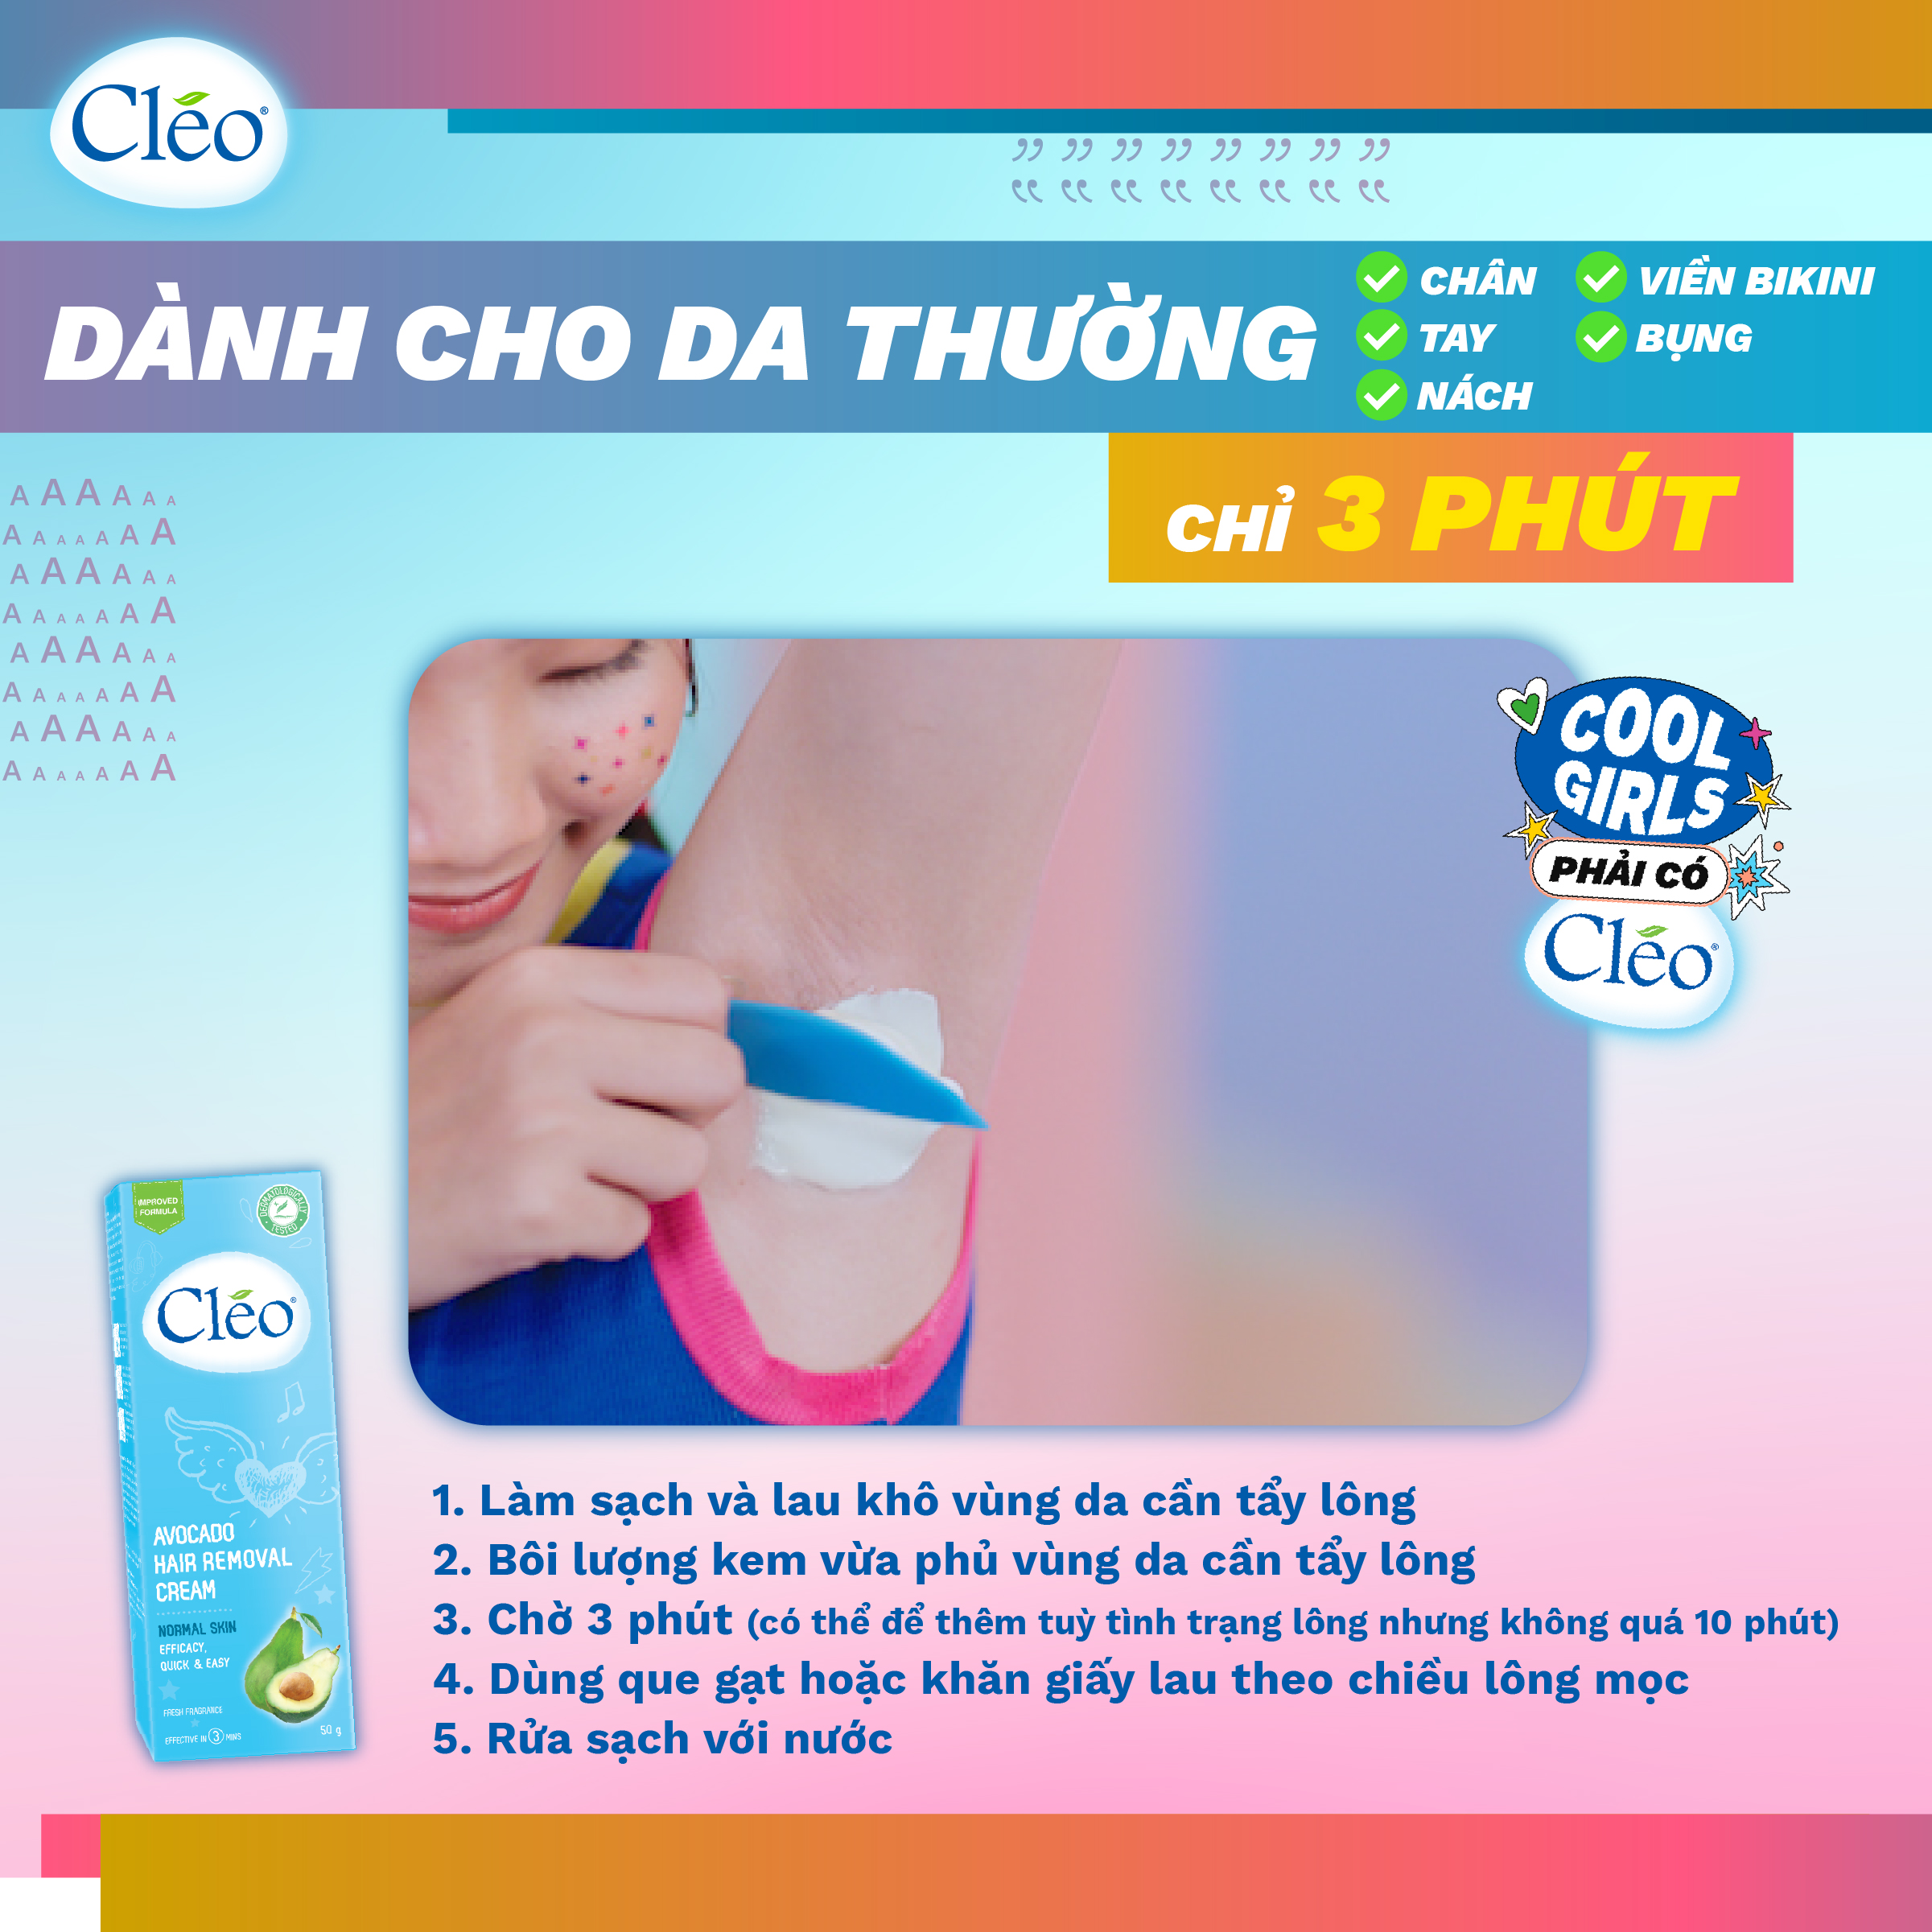 Kem Tẩy Lông Chiết Xuất Bơ Cleo Dành Cho Da Thường 25g, an toàn, không đau và đạt hiệu quả nhanh chóng